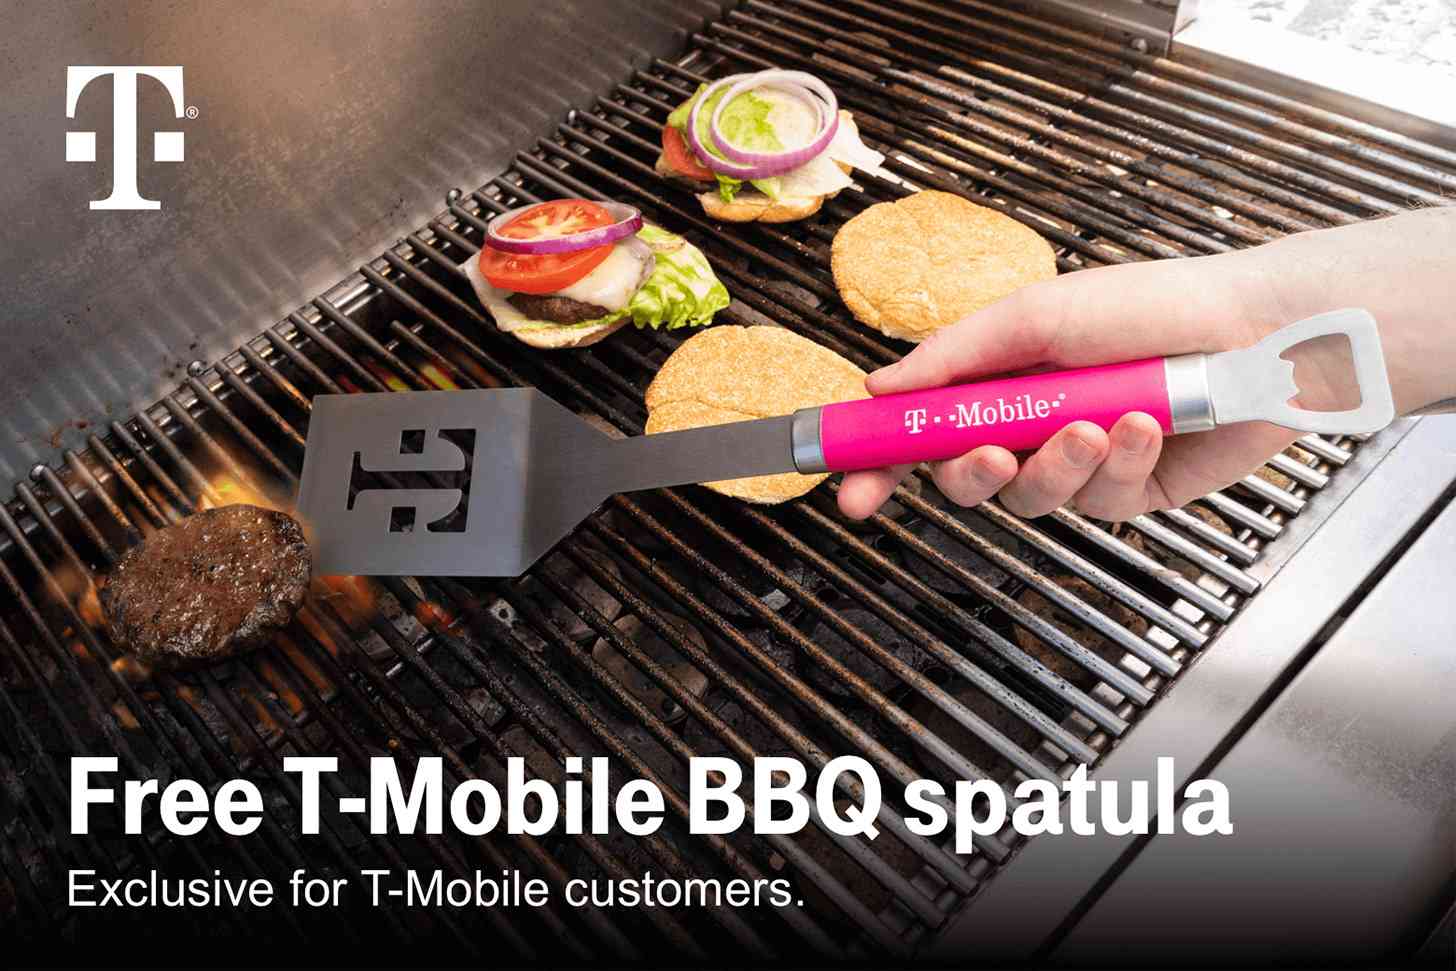 T-Mobile BBQ spatula